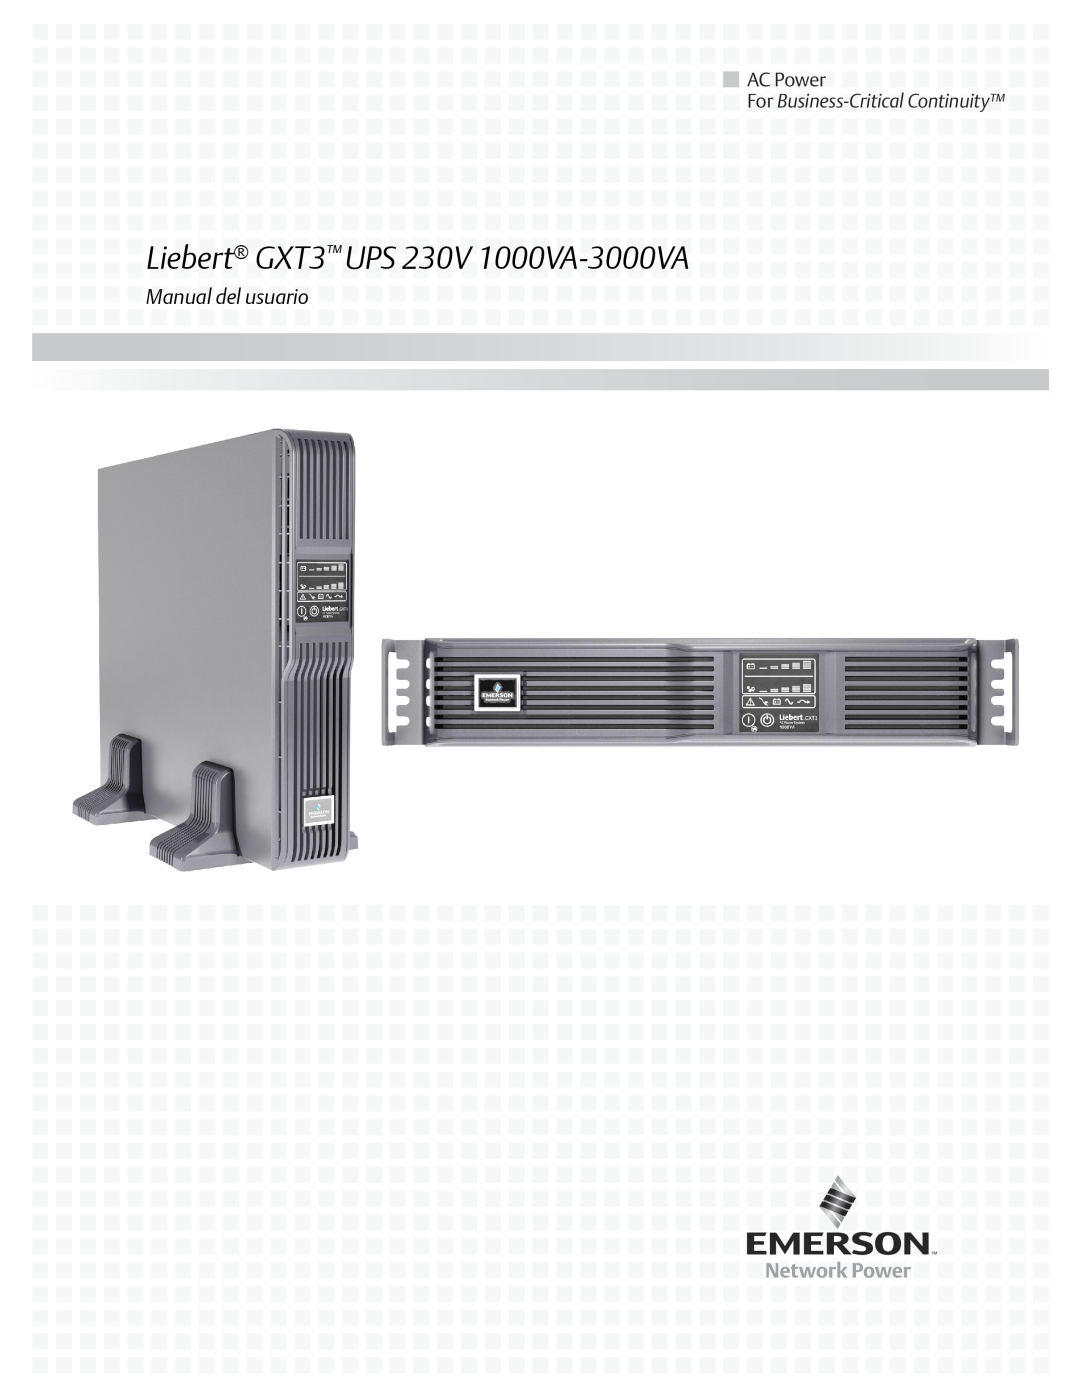 Emerson manual Liebert GXT3 UPS 230V 1000VA-3000VA, AC Power, Manual del usuario, For Business-Critical Continuity 